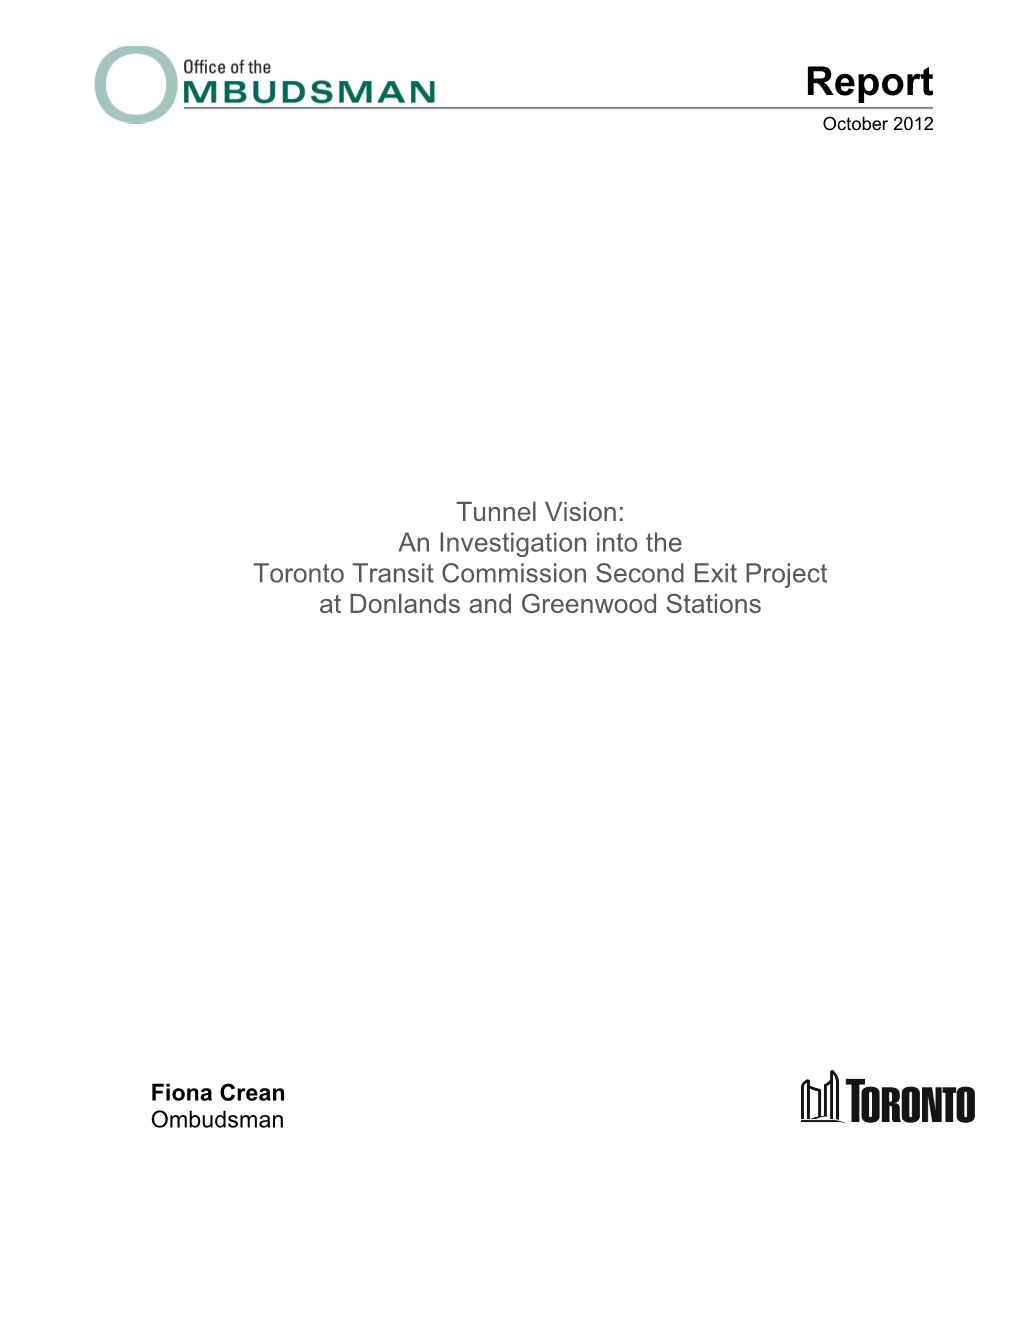 TTC Investigation Report